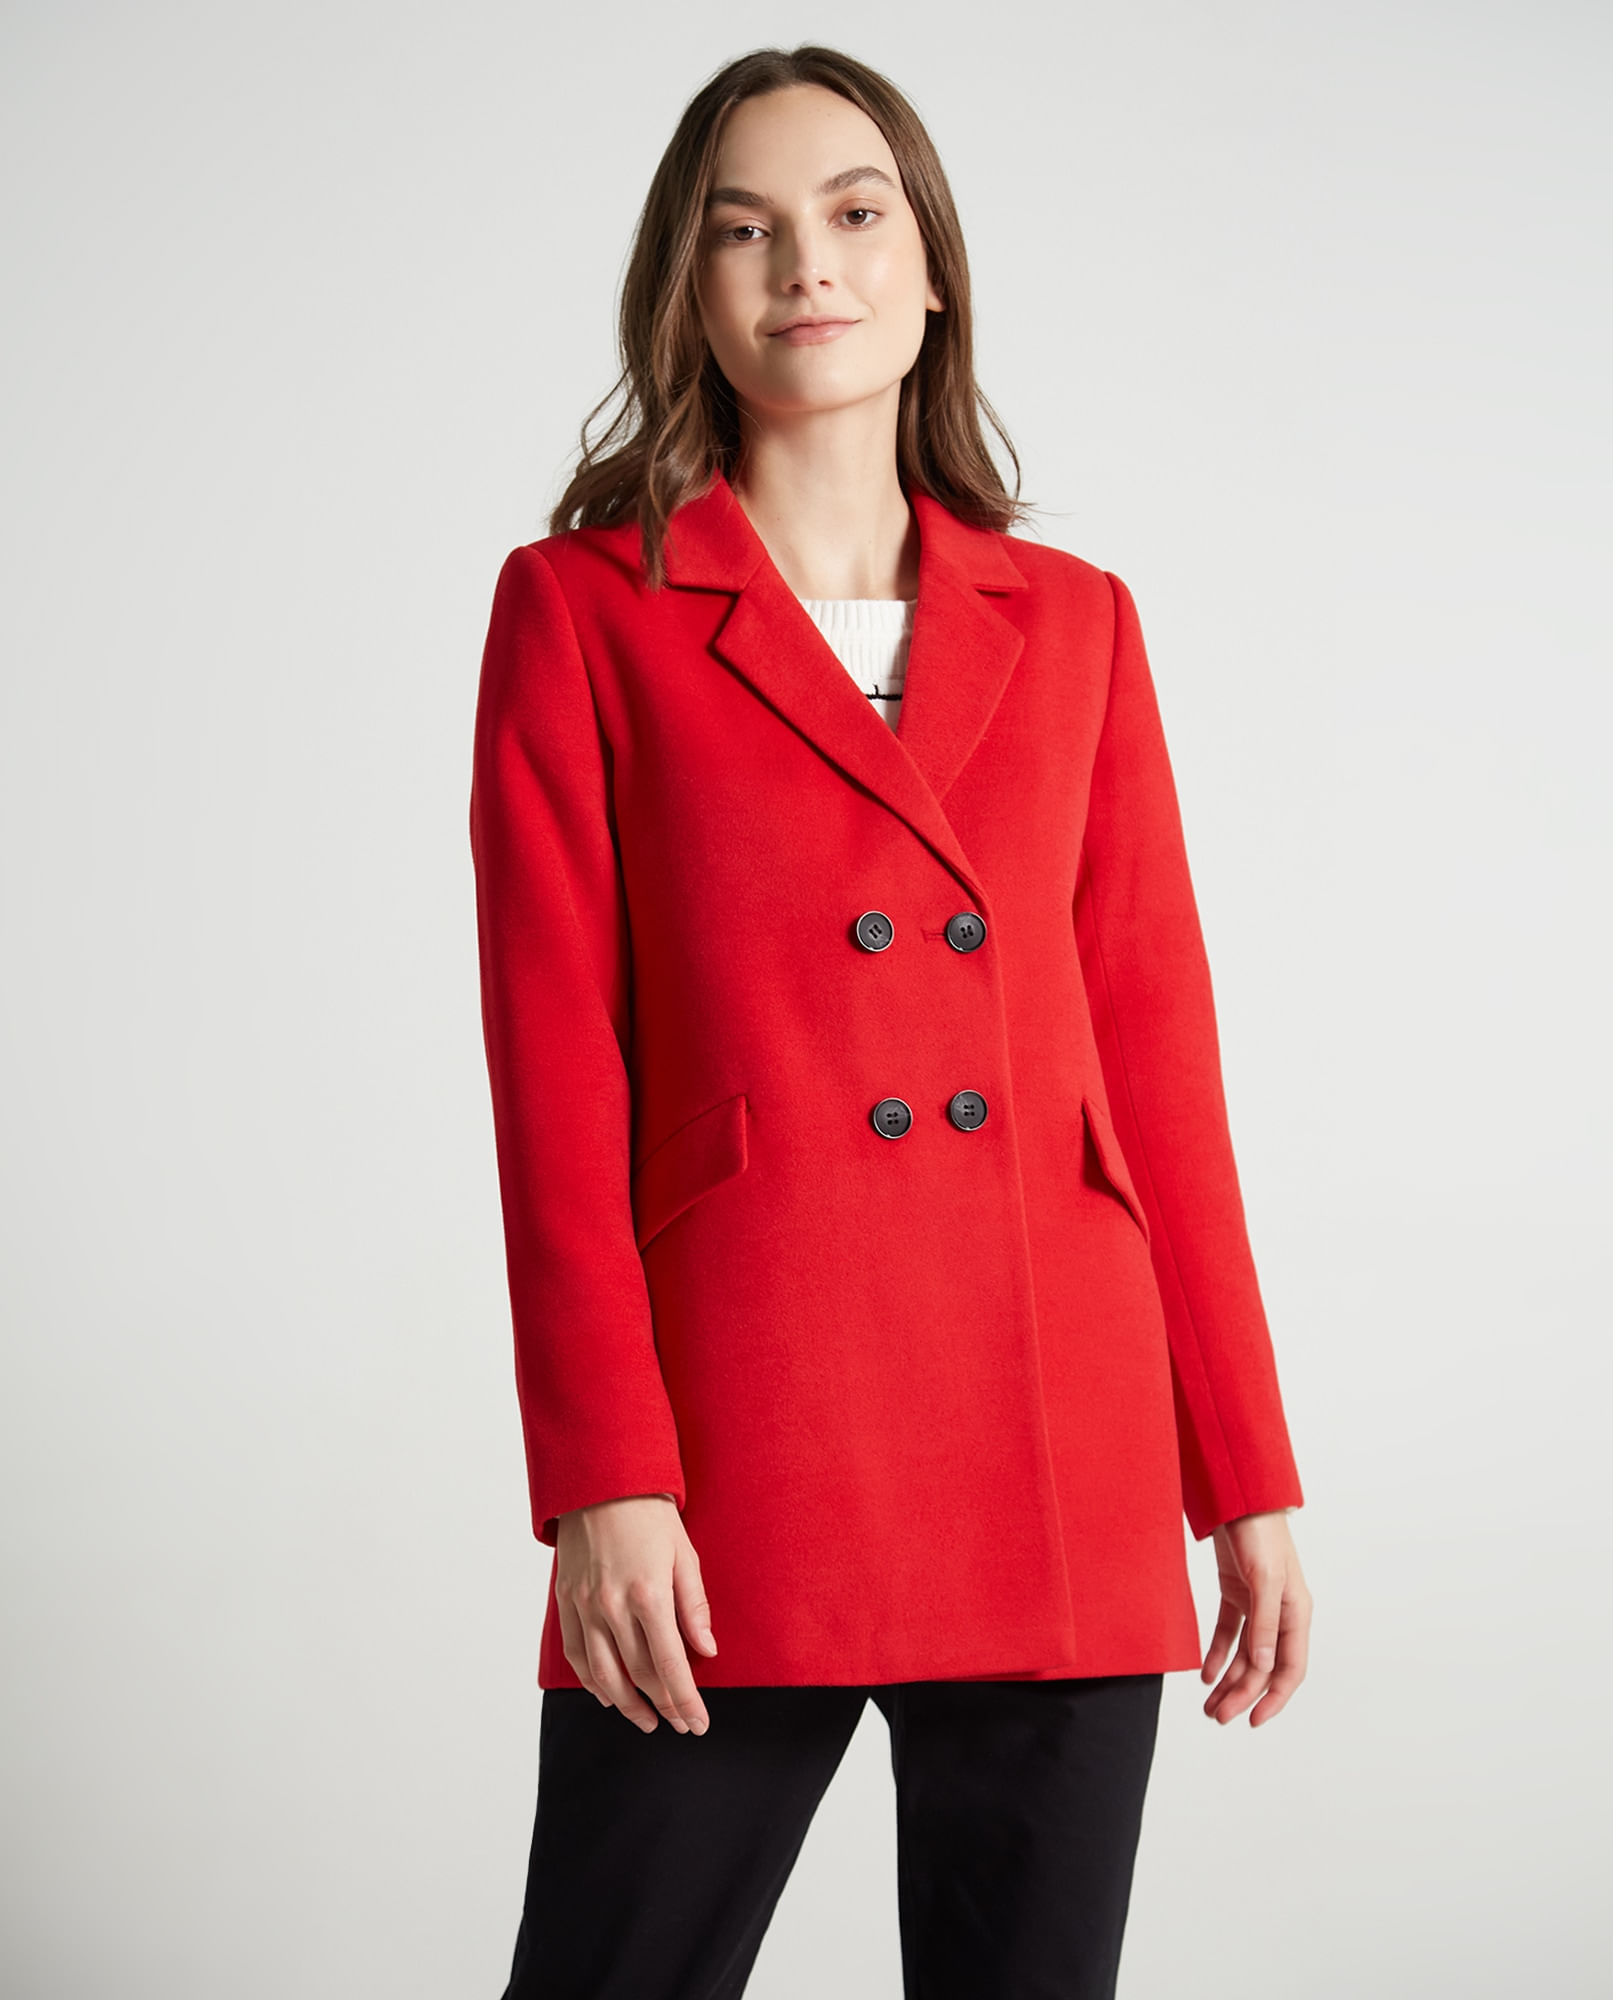  Esprit 108ee1i029 - Jersey para mujer, color rojo cereza 5 619,  tamaño mediano : Ropa, Zapatos y Joyería